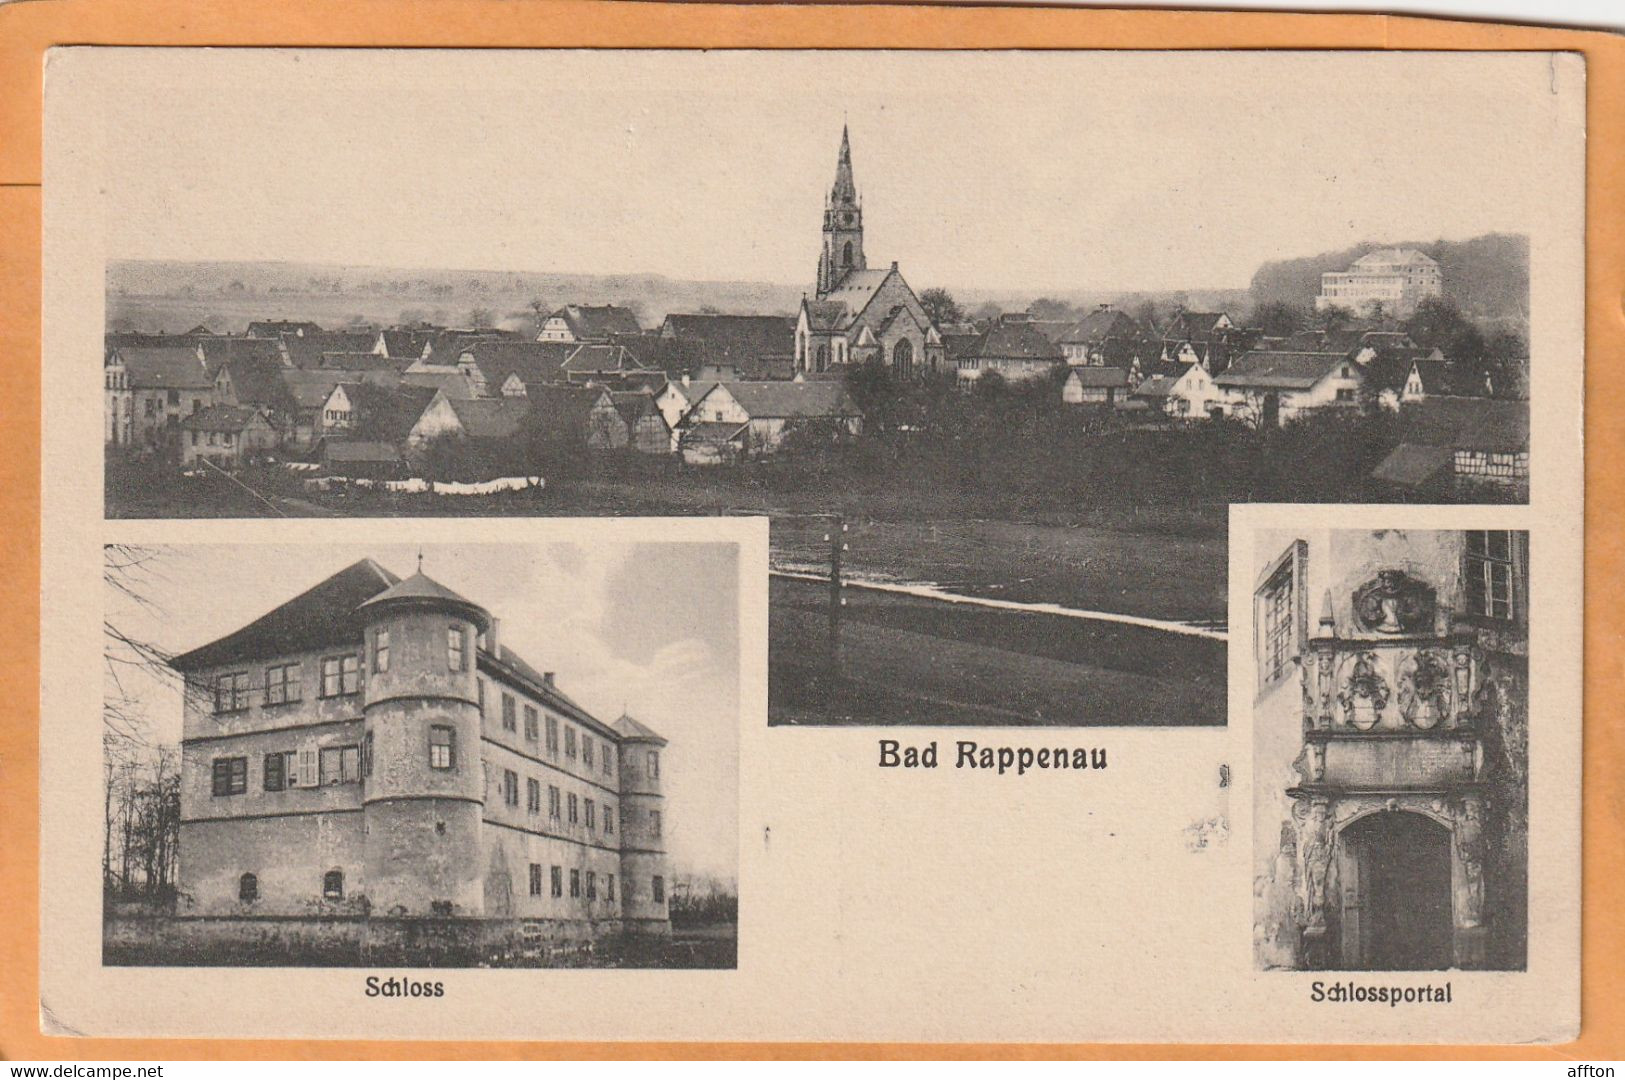 Bad Rappenau Germany 1918 Postcard - Bad Rappenau